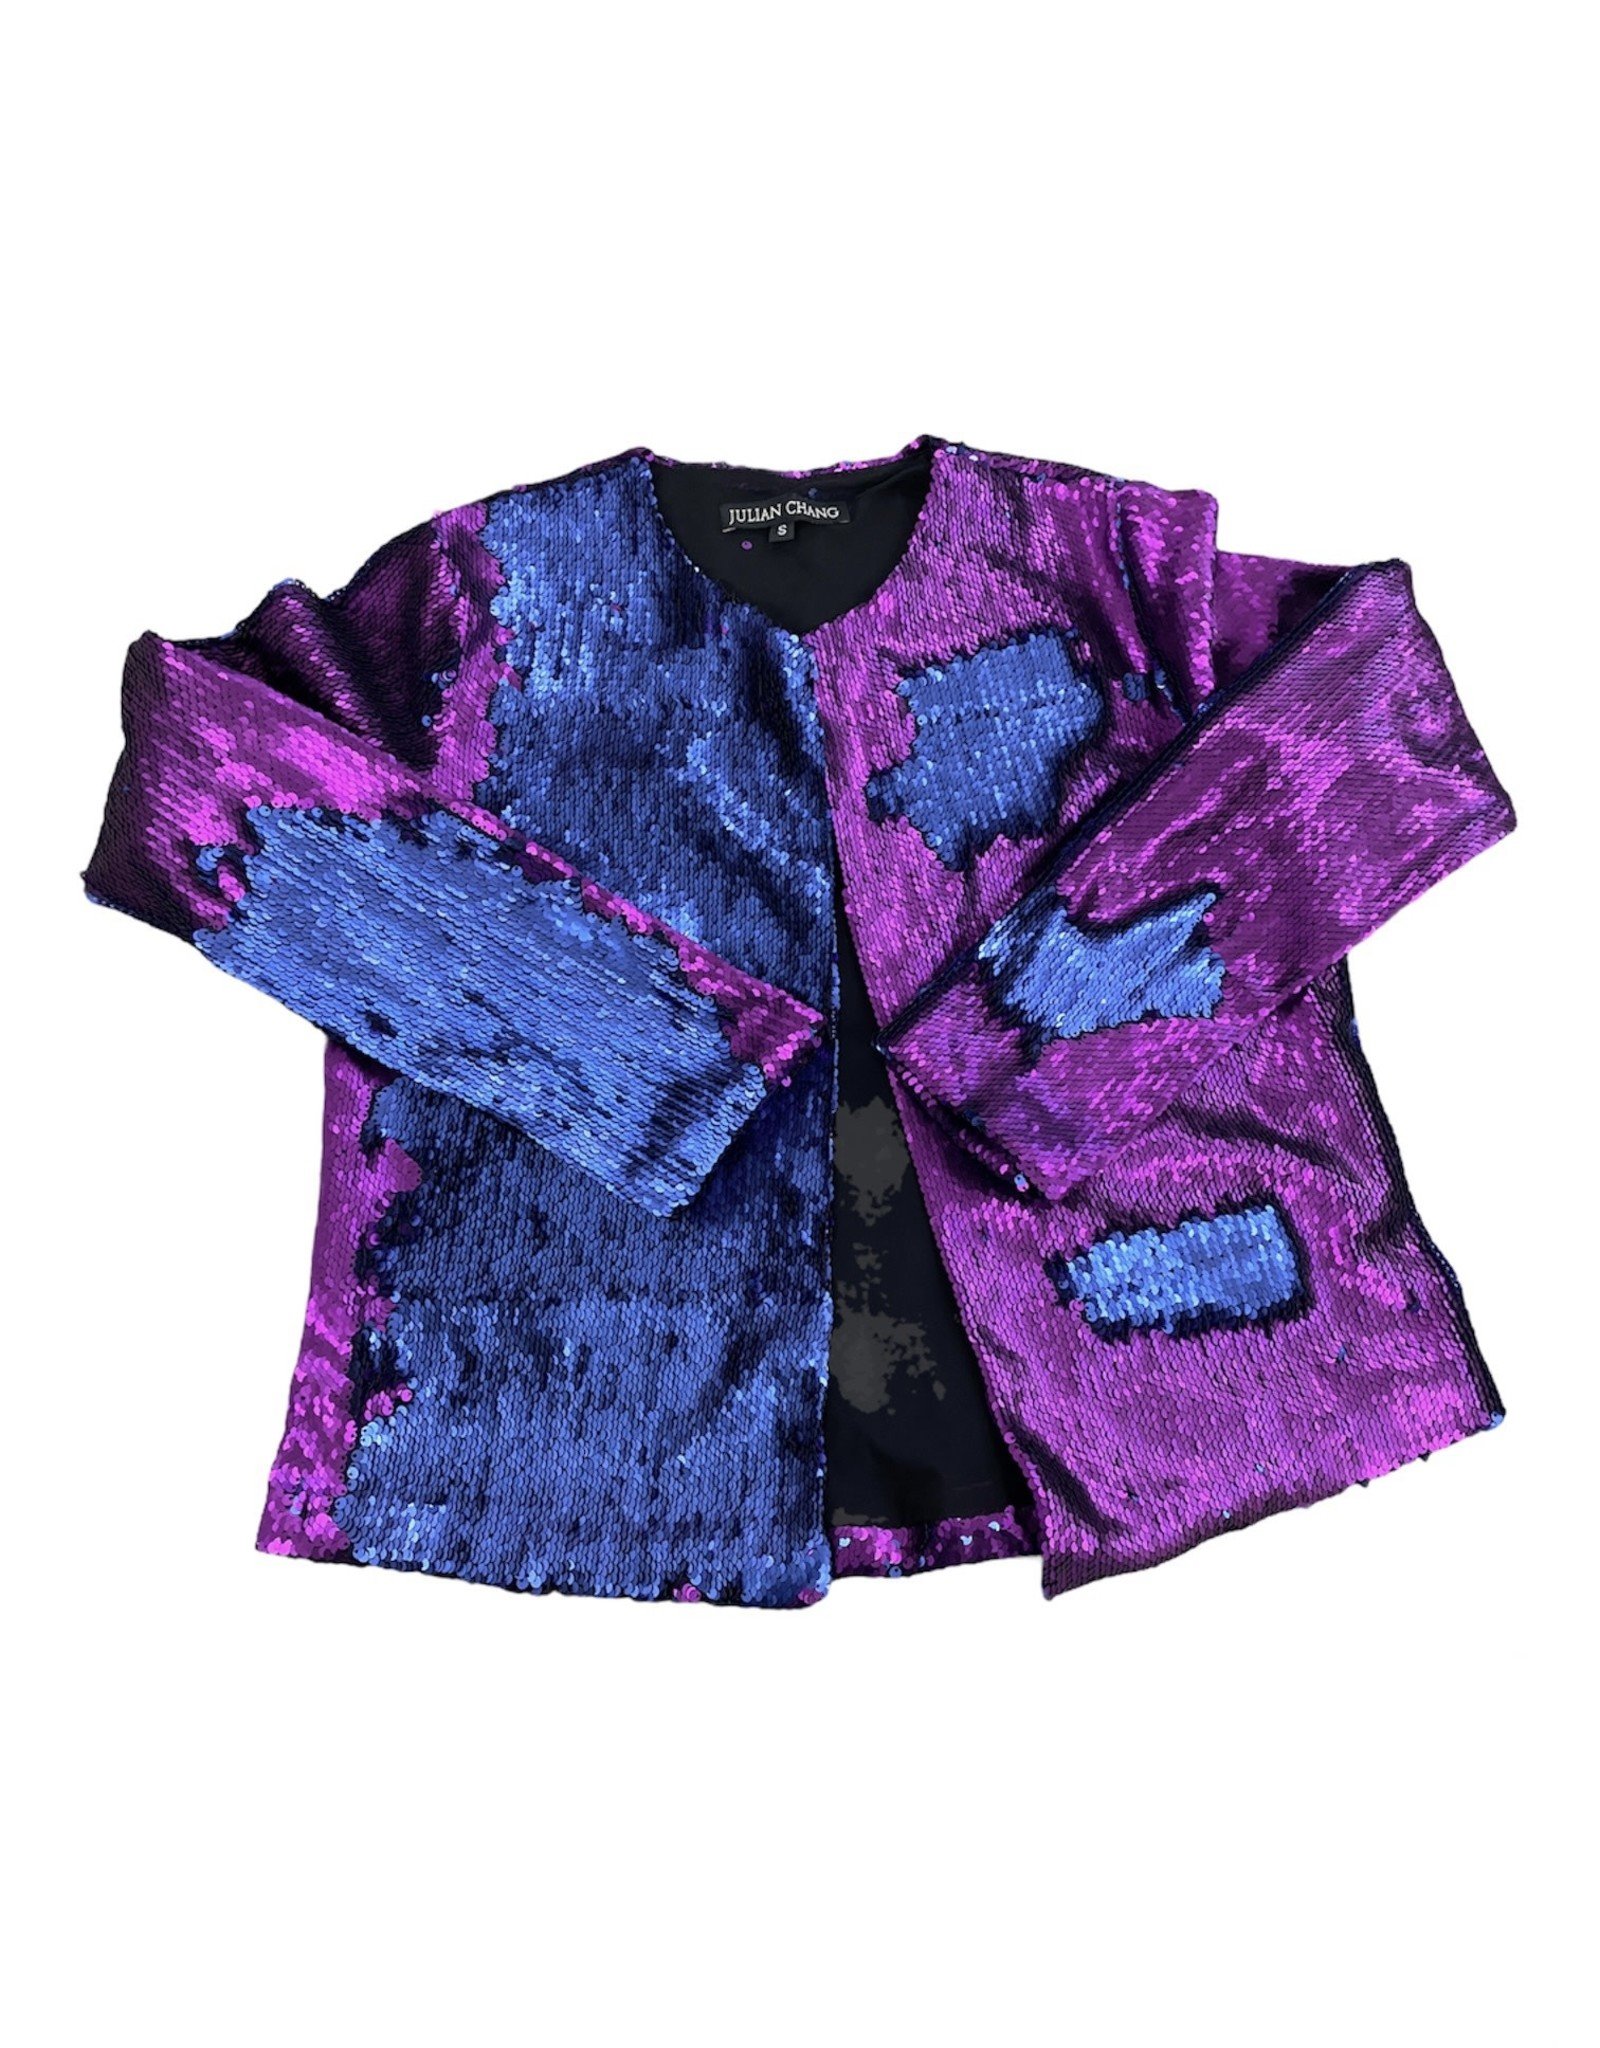 Julian Chang Julian Chang 93 flip sequin jacket purple/blue